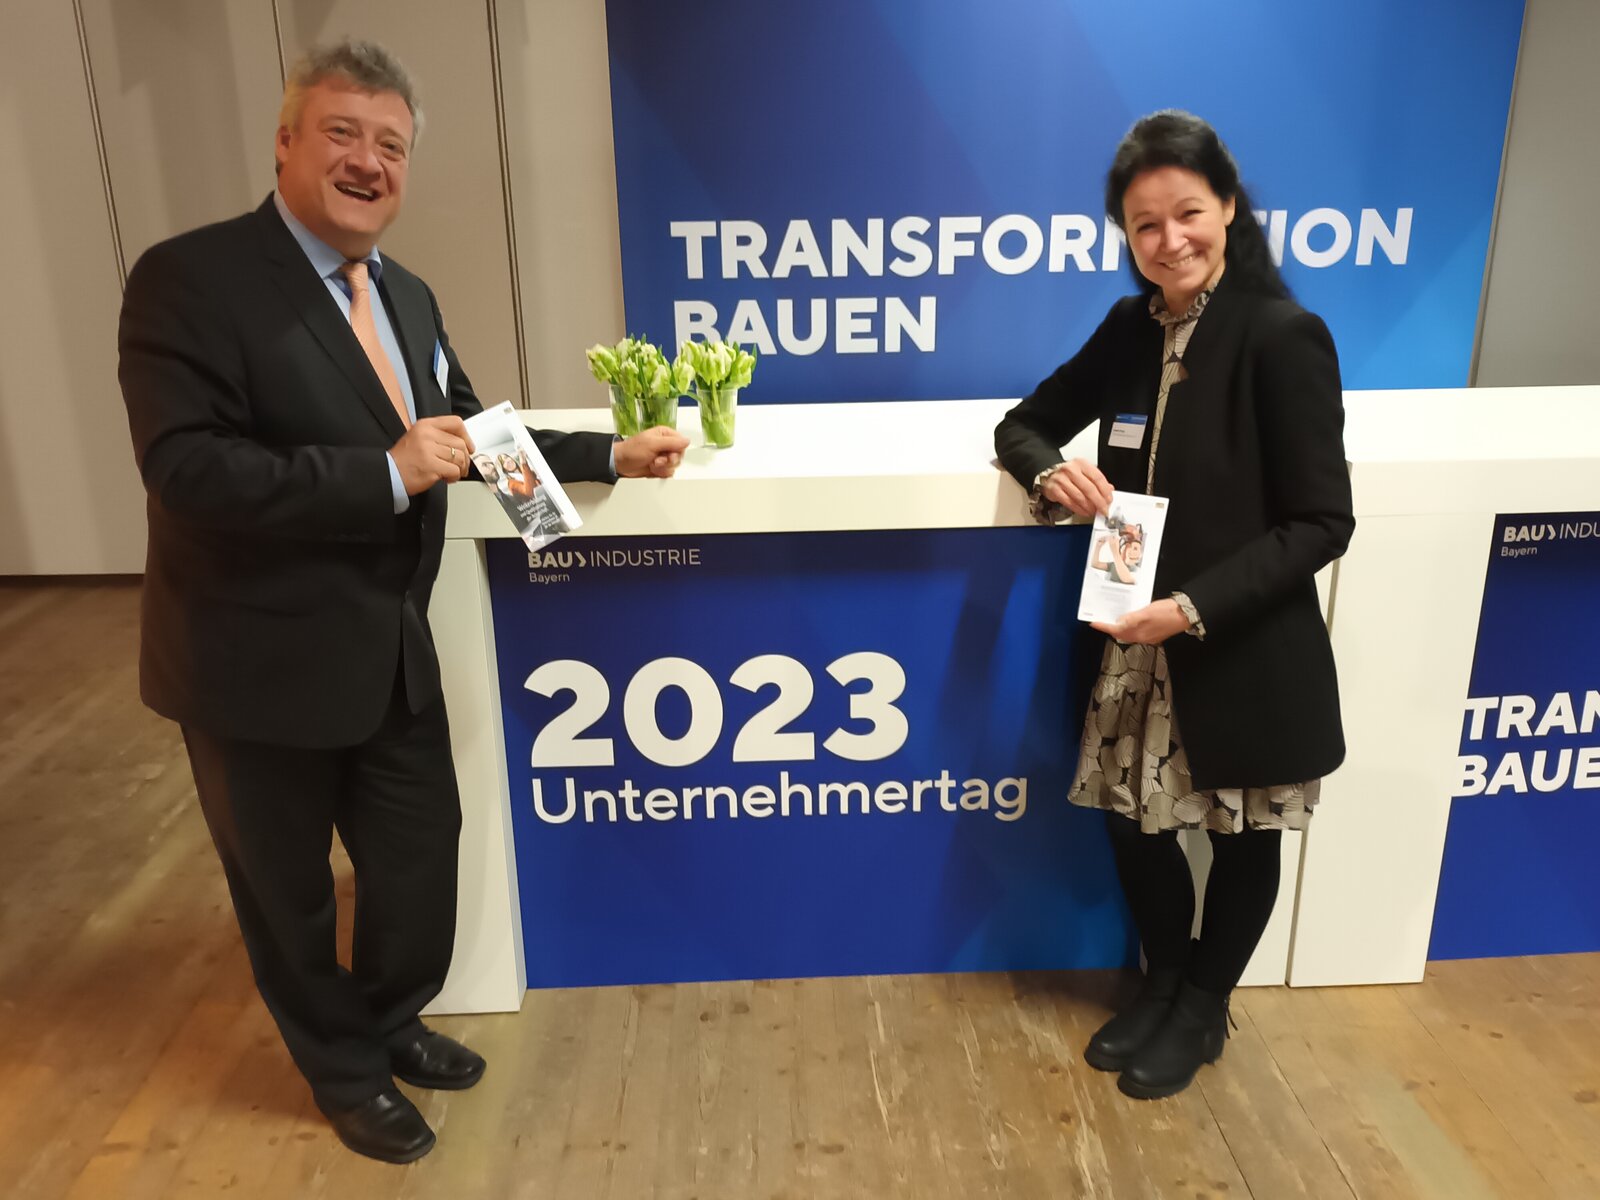 Günter Schmid und Sabine Tragl vor dem Plakat des Unternehmertages der Bauwirtschaft. Motto: Transformation Bauen